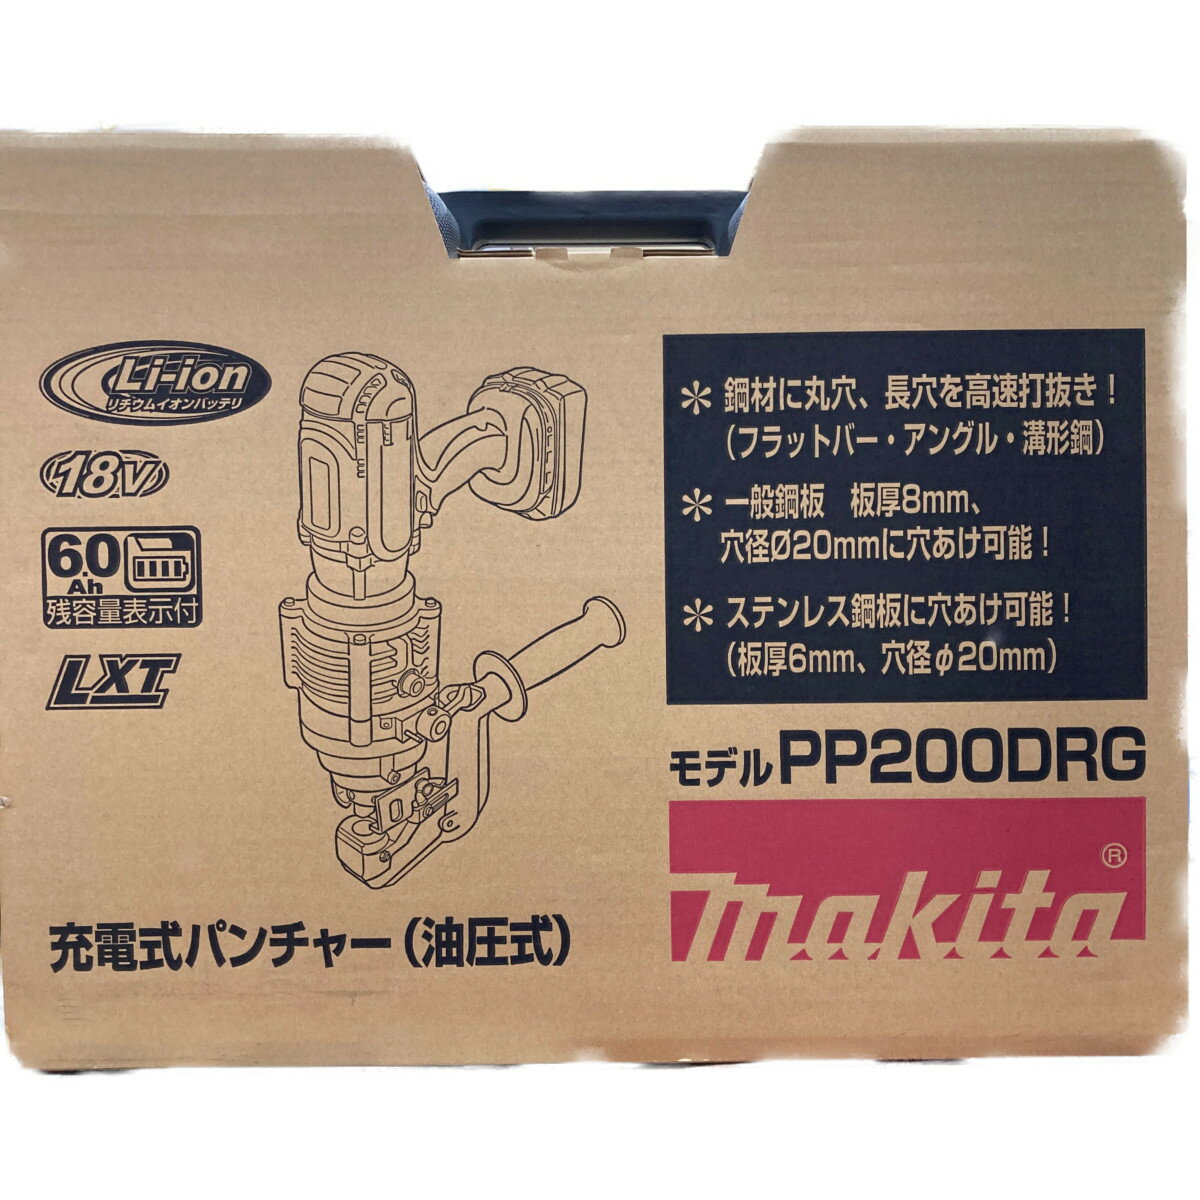 ●●【中古】MAKITA 18V 充電式パンチャ(油圧式) PP200DRG Sランク